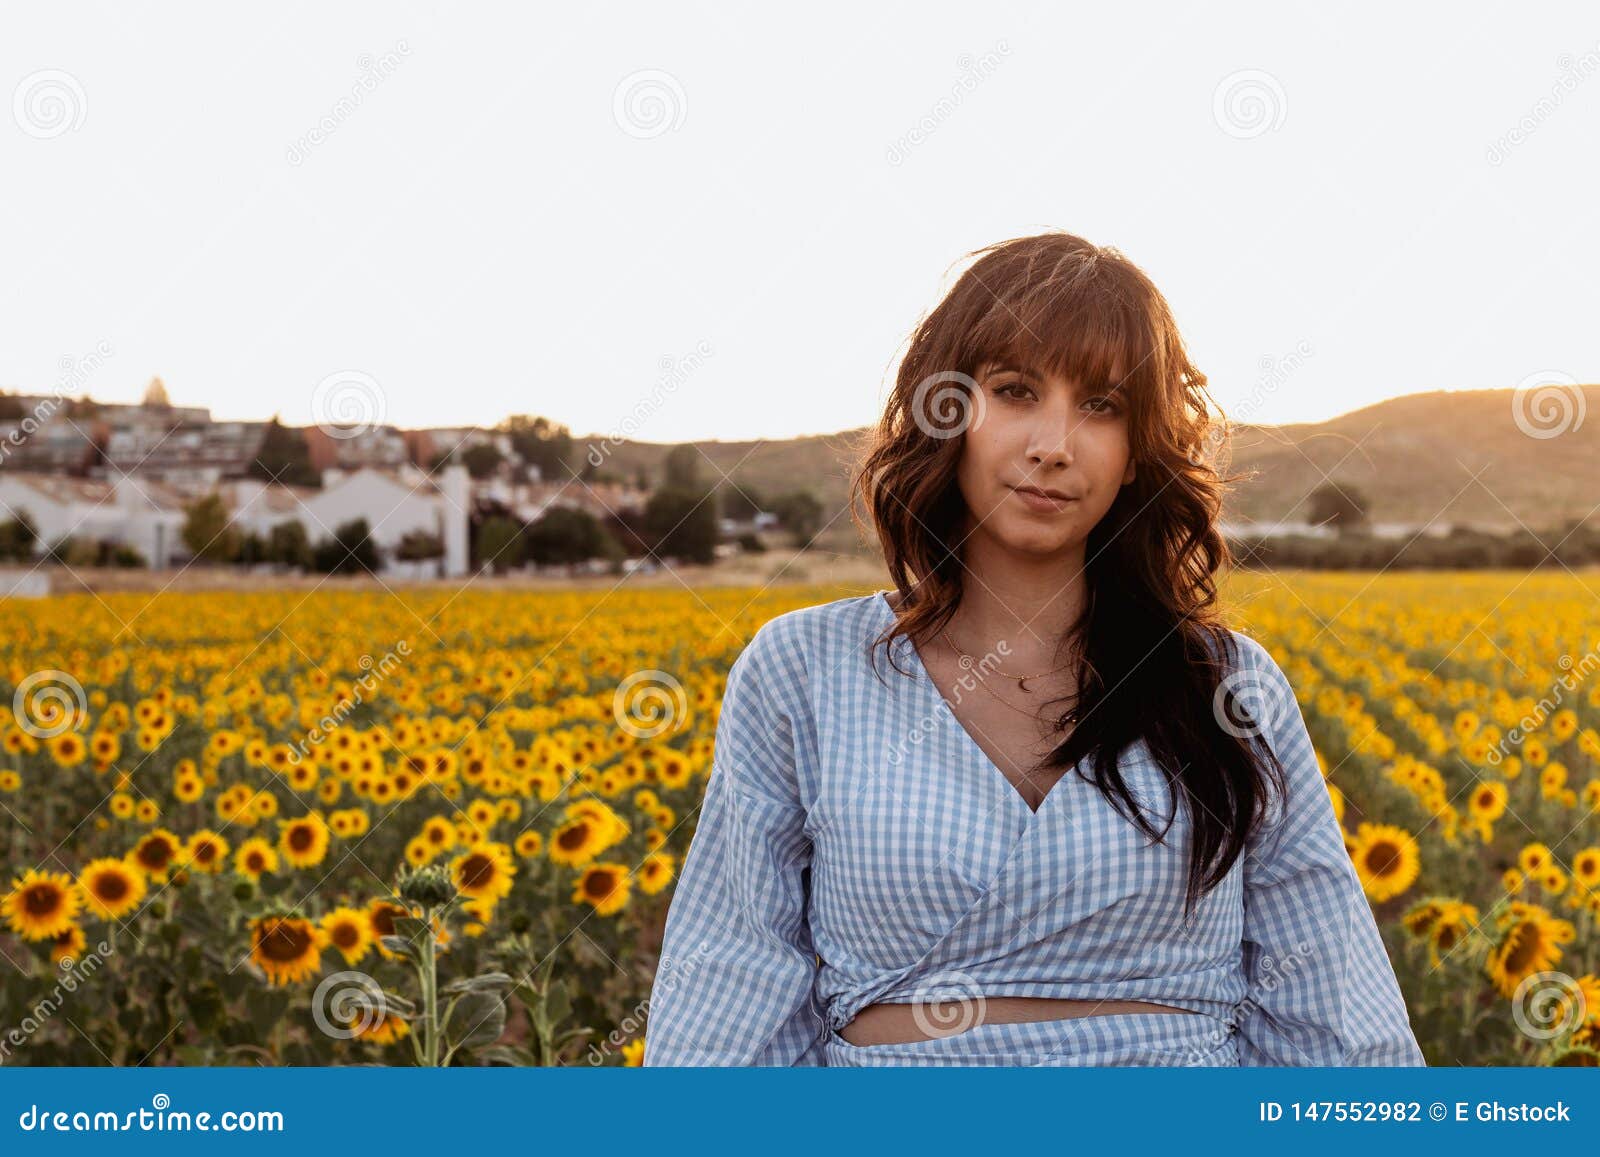 Retrato De La Mujer Joven Hermosa Con El Pelo Negro En Un Campo De Girasoles En La Puesta Del Sol Foto De Archivo Imagen De Brillante Humano 147552982